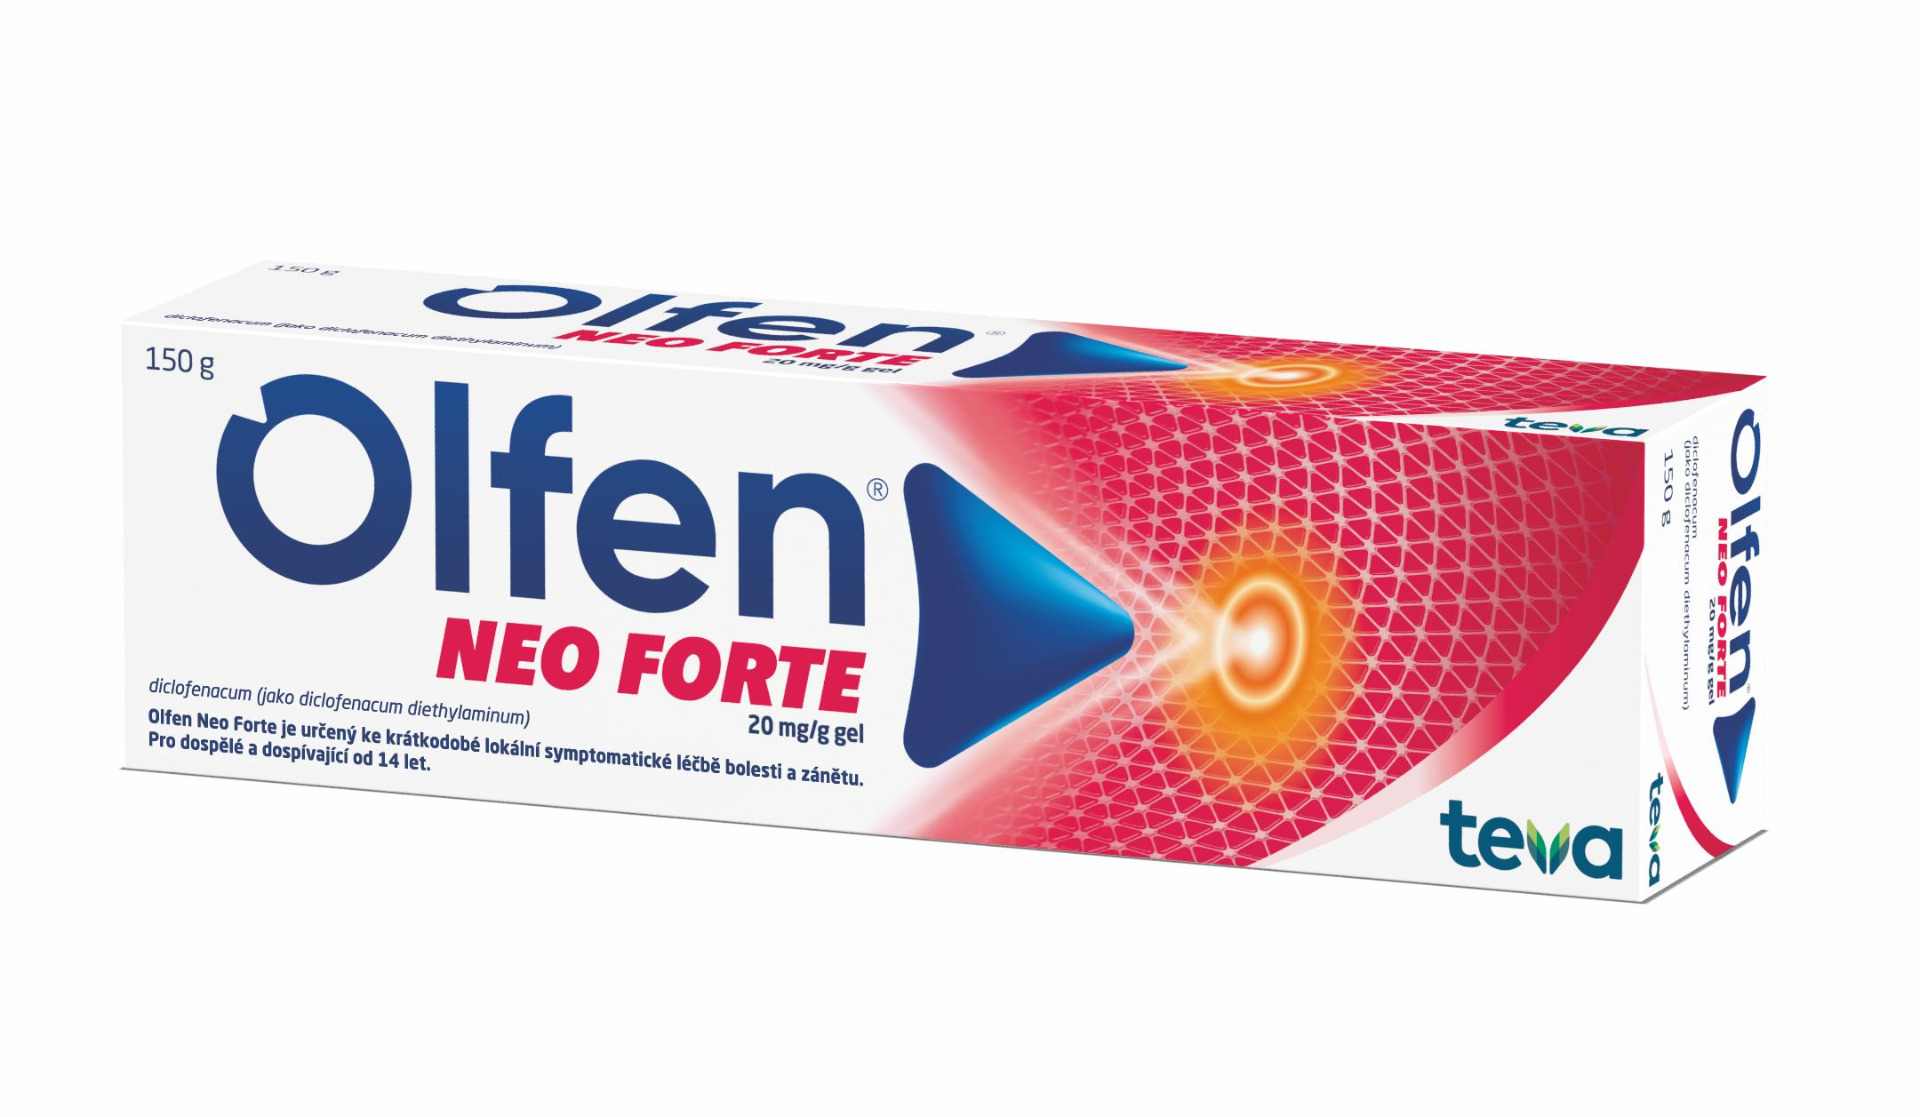 Olfen Neo Forte 20 mg/g gel 150 g Olfen